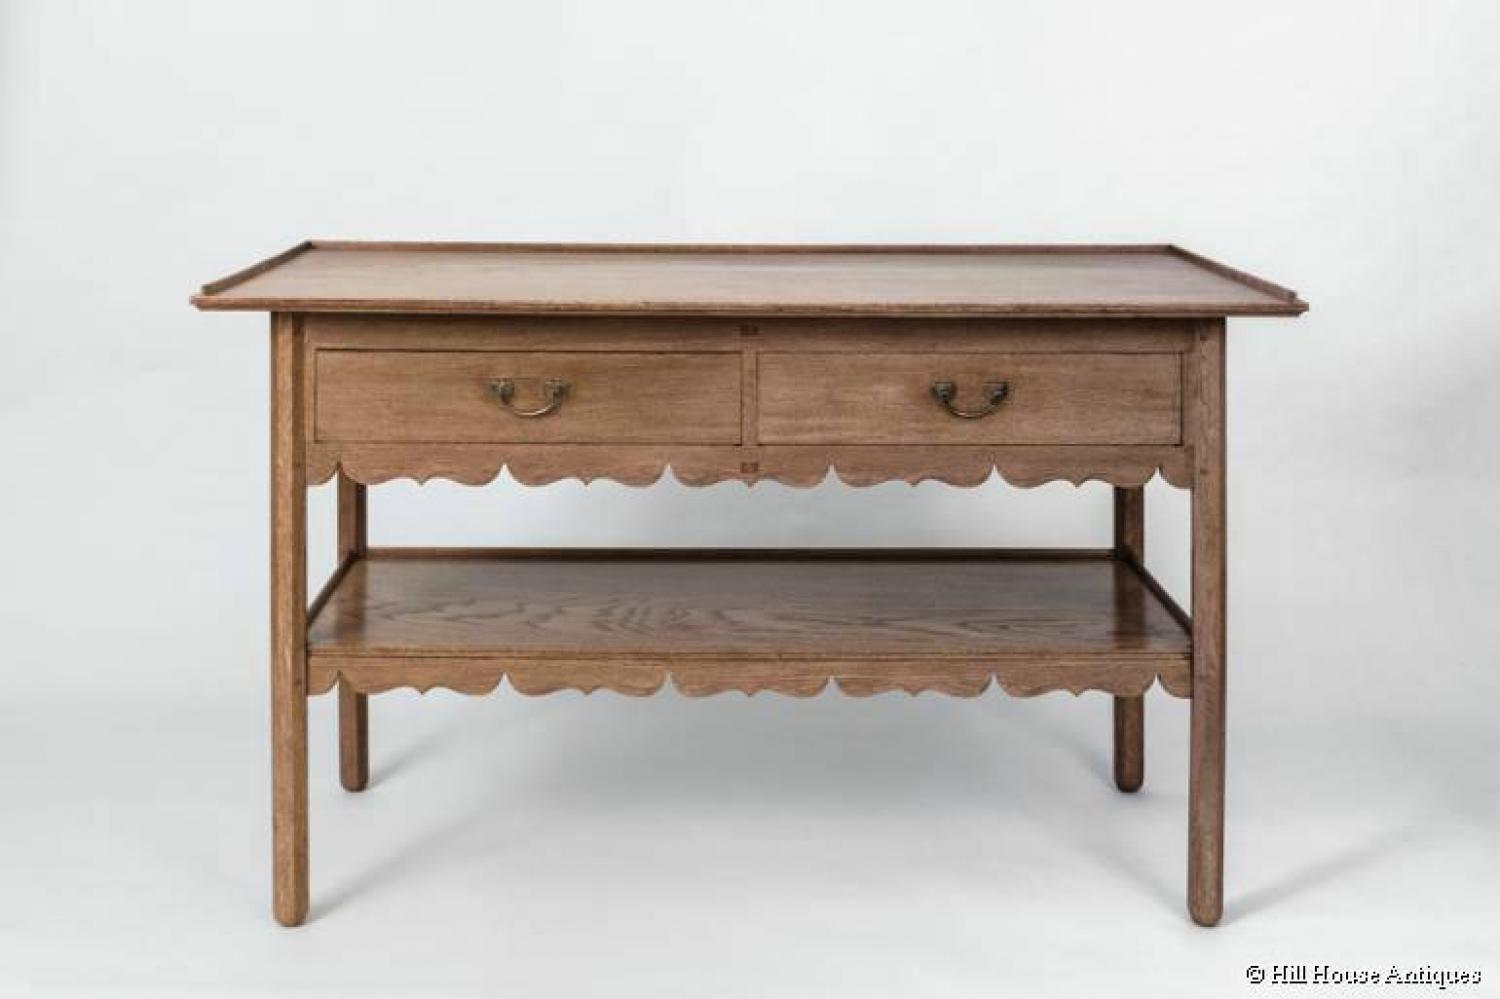 CFA Voysey/Peter Waals Cotswold oak table